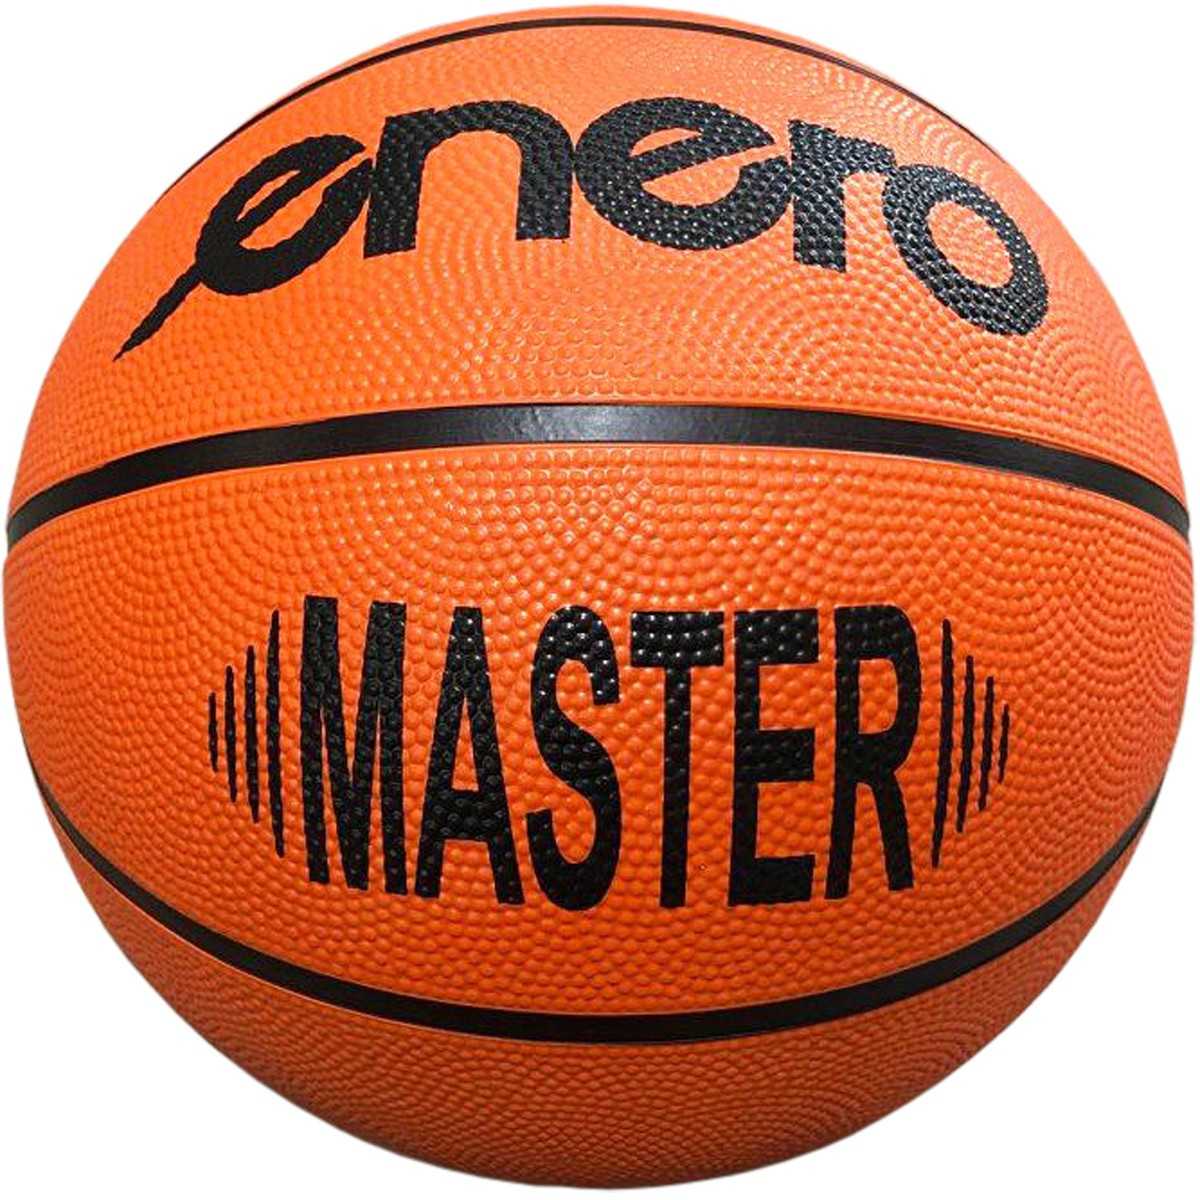 Enero Master krepšinio kamuolys, 5